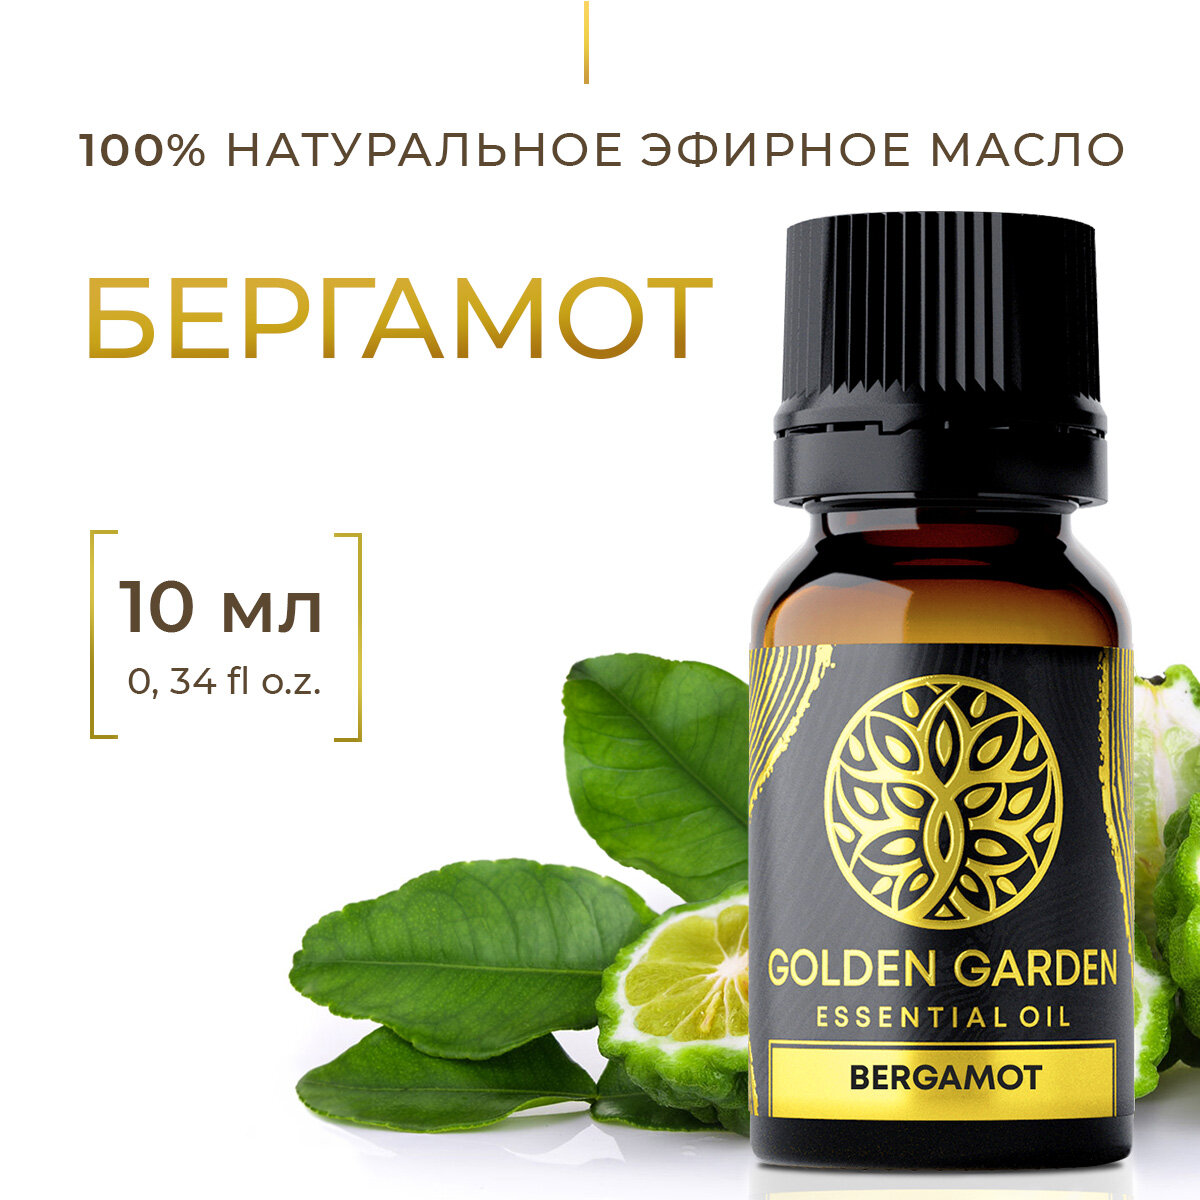 Натуральное эфирное масло бергамота 10мл Golden Garden для ароматерапии диффузора бани и сауны